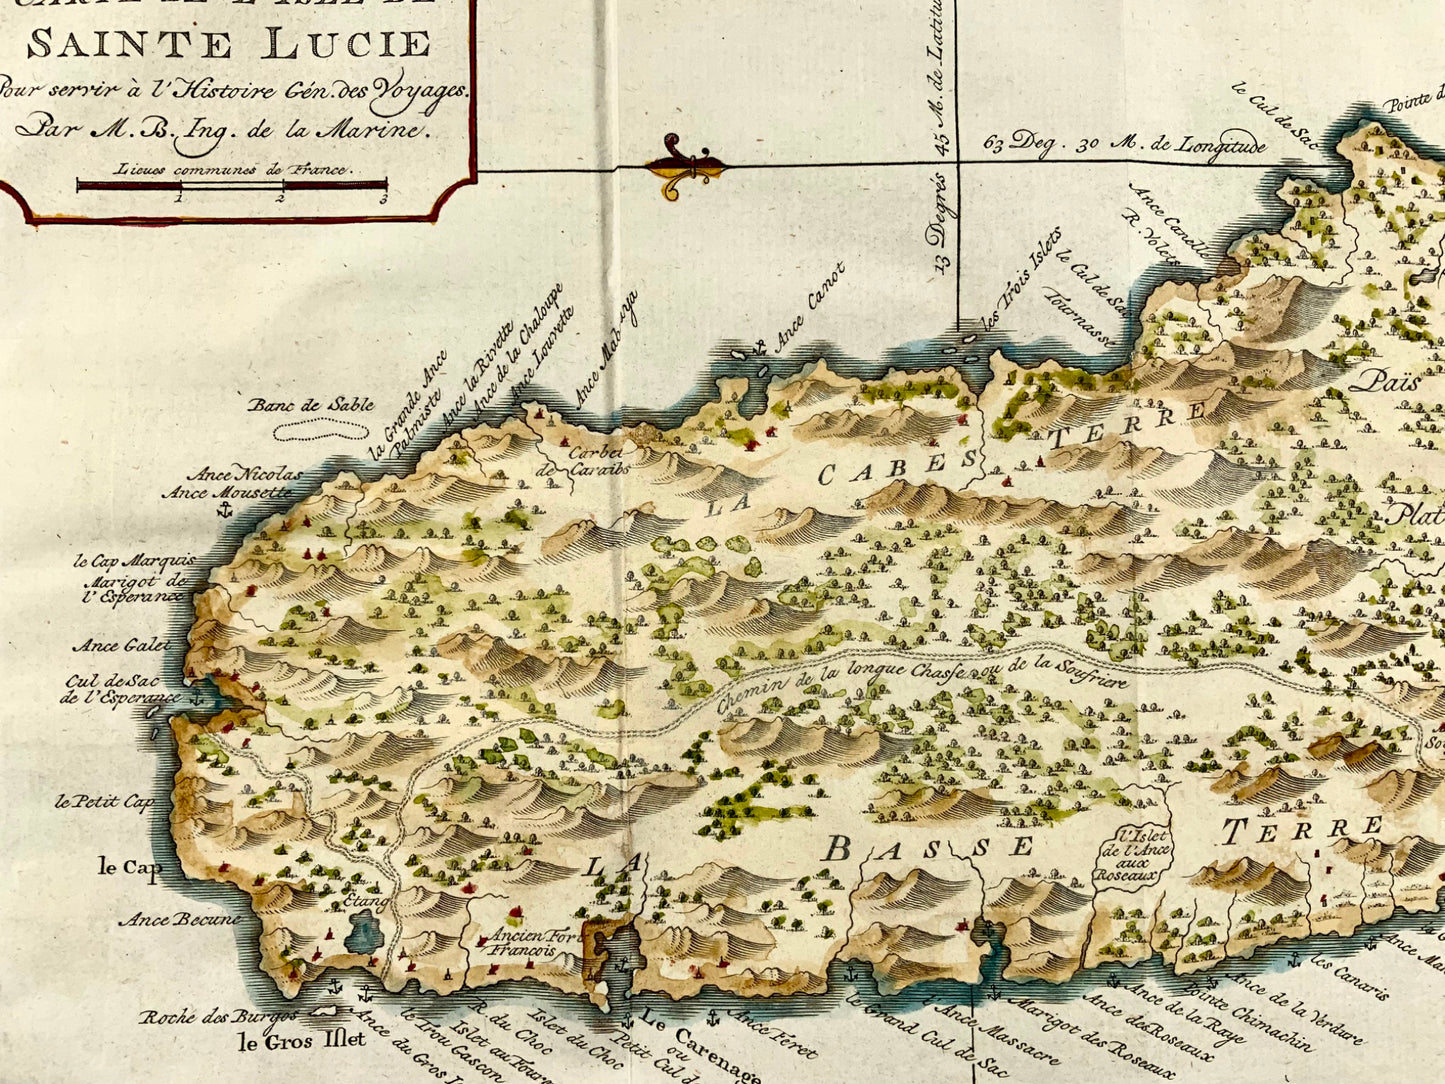 1775, Jacques Nicolas Bellin, St Lucia, Indie occidentali, mappa colorata a mano, topografia straniera